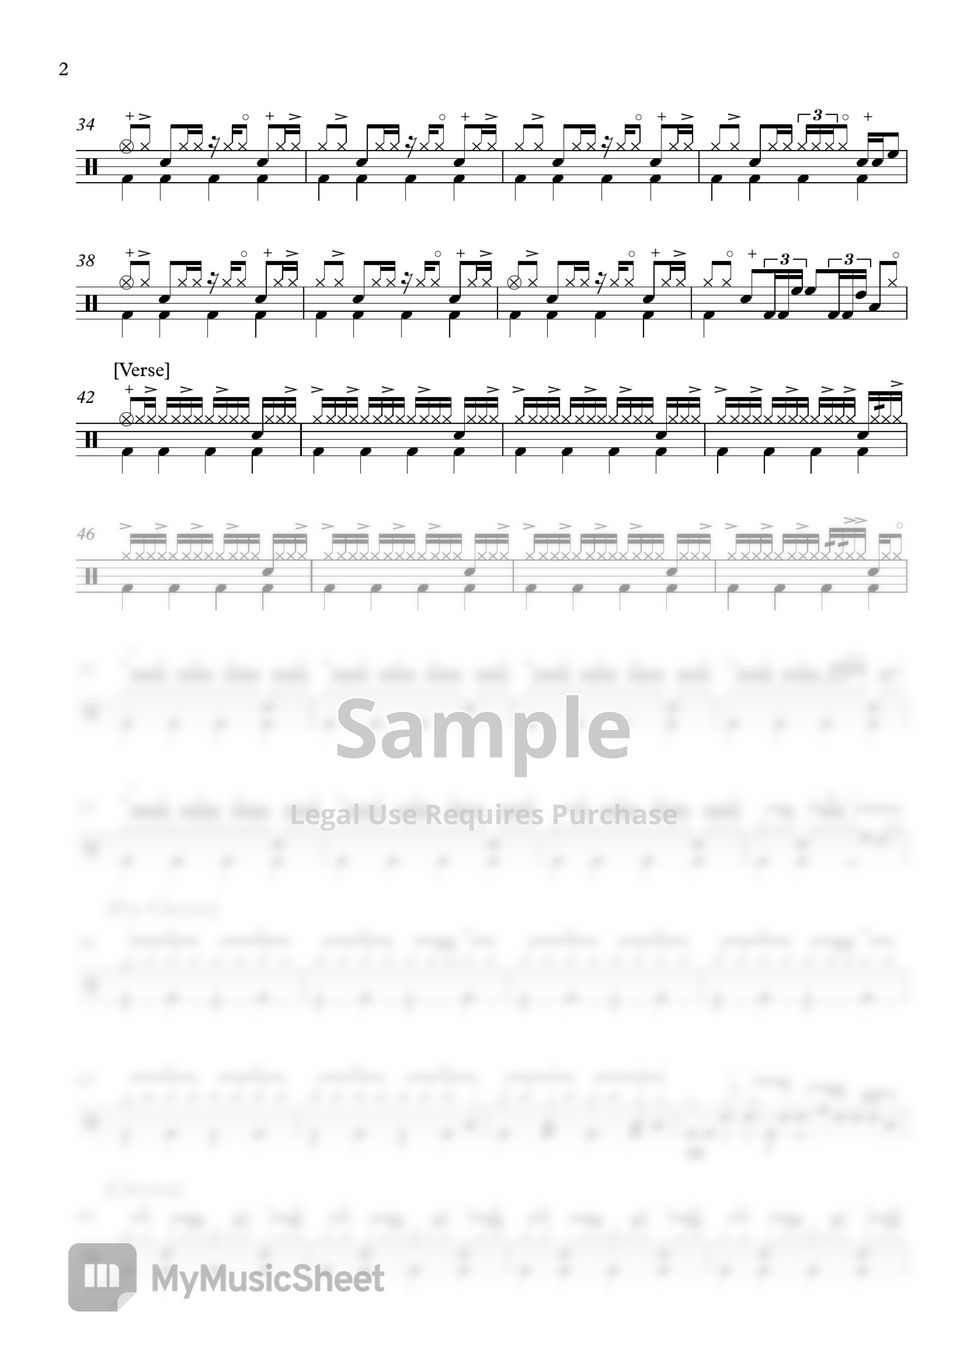 제이어스(J-US) - 시편 139편 (Psalm 139) (Drum) by 606Drum